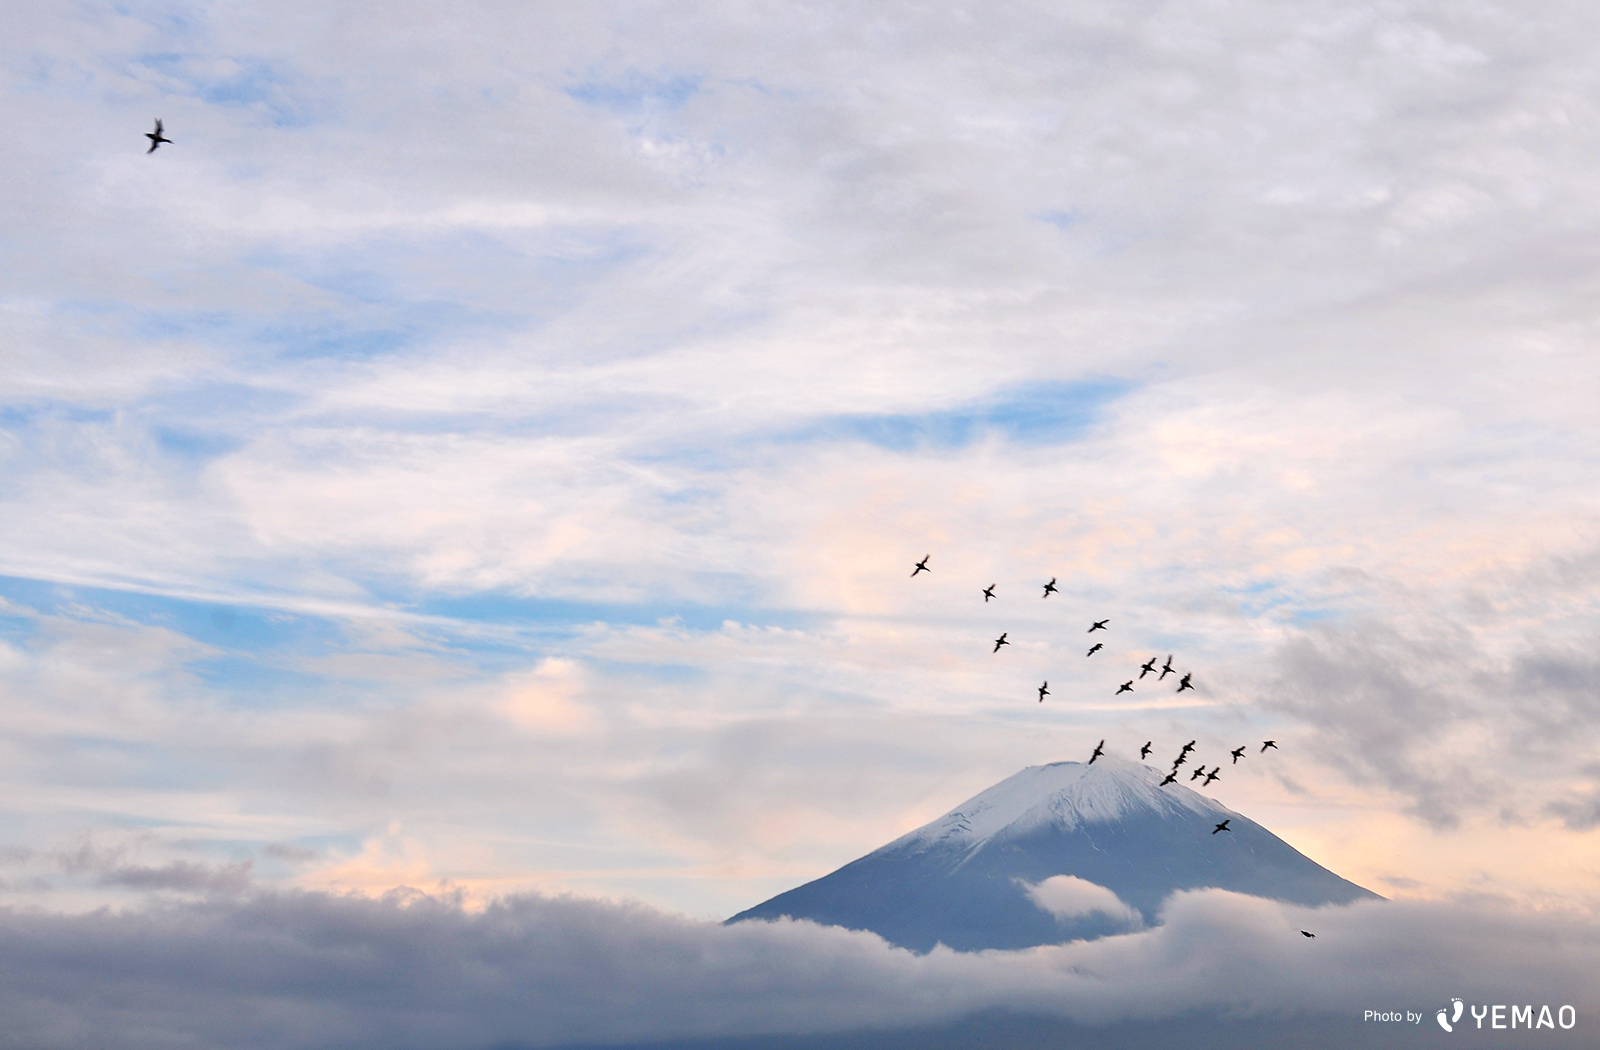 壁紙プレゼント 富士山の絶景写真12選 Starthome